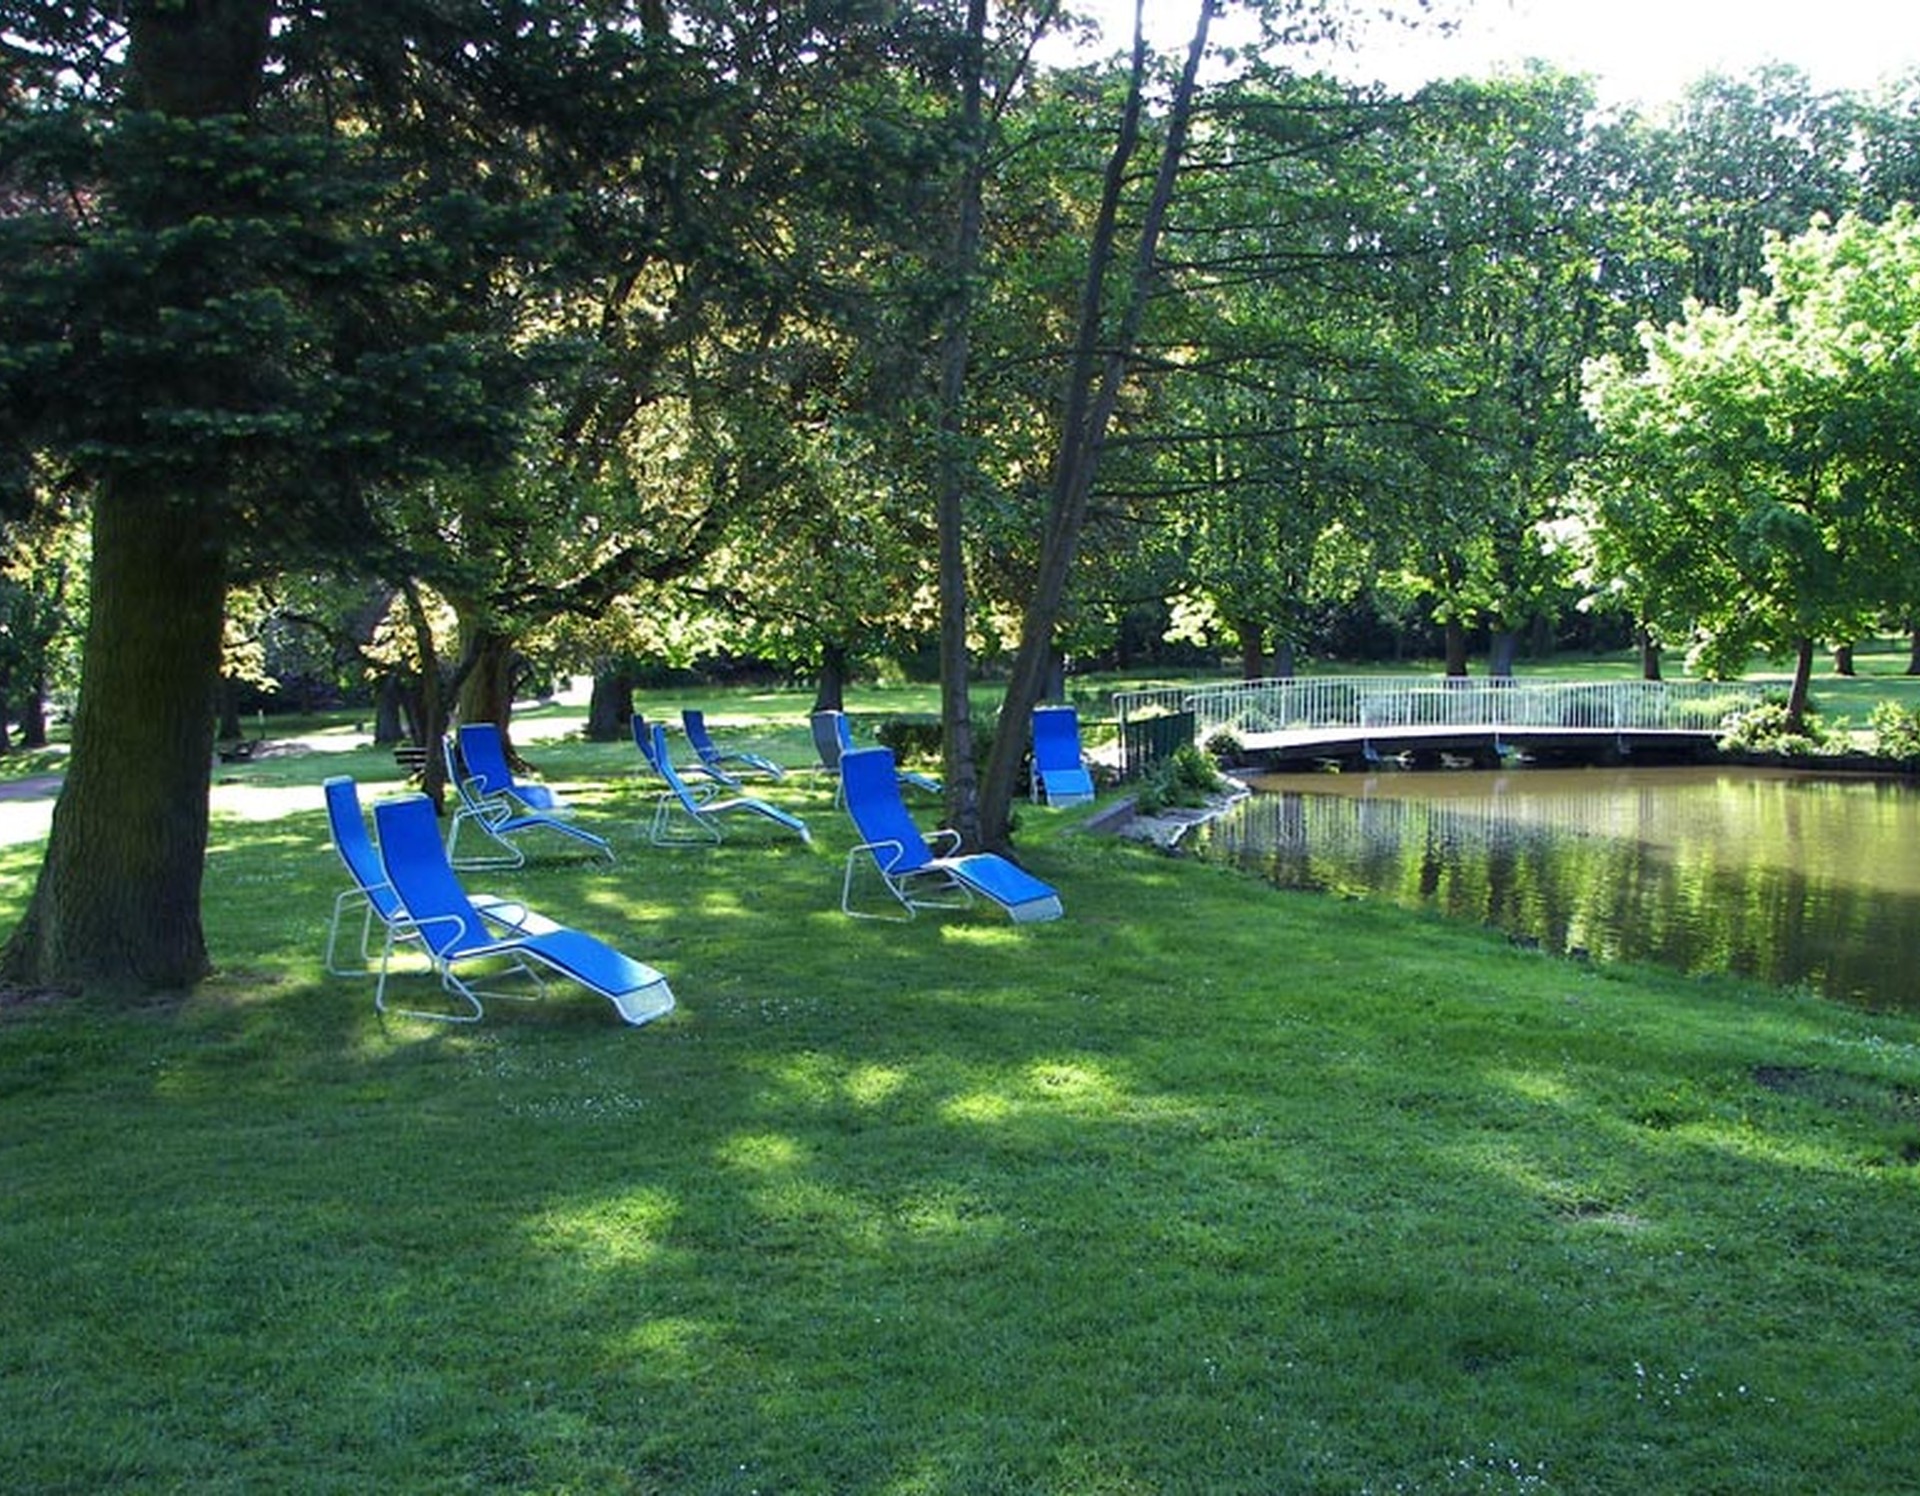 Blaue Liegestühle im Kurpark Bad Hermannsborn. Rechts führt eine Brücke über einen der Teiche im Park.